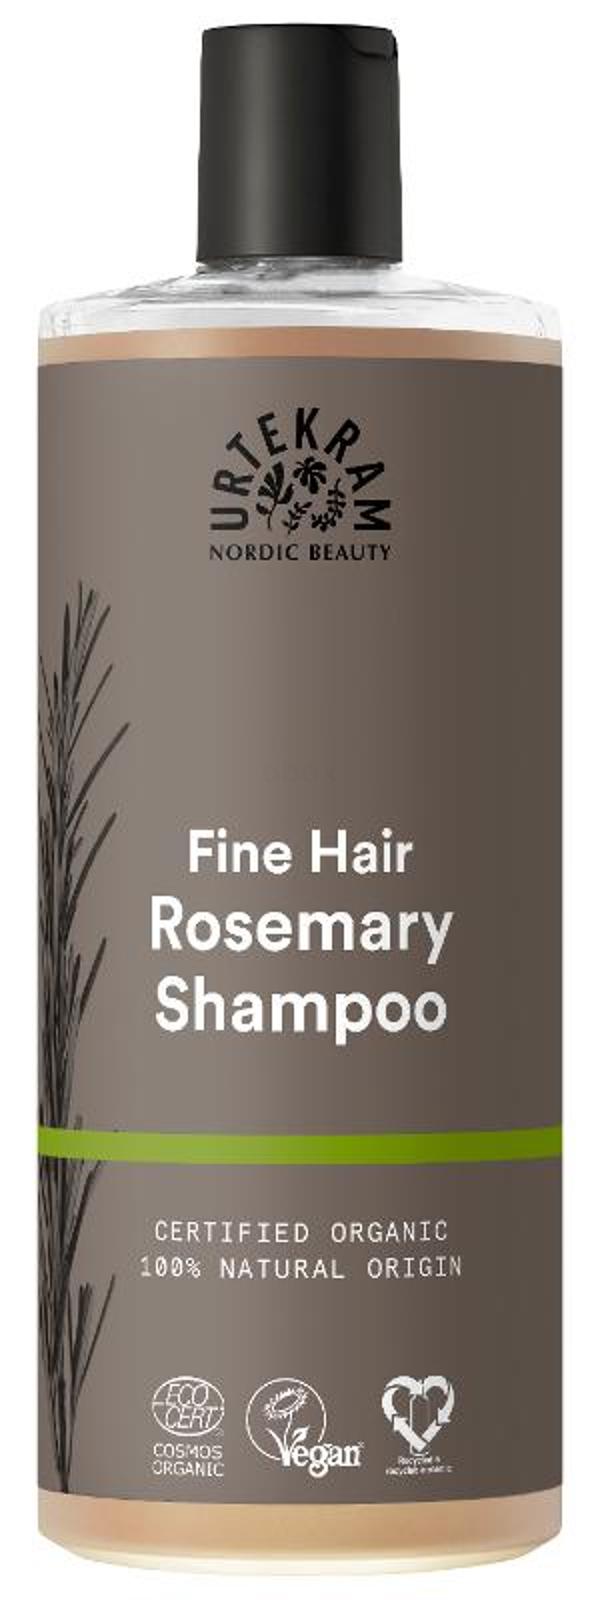 Produktfoto zu Shampoo Rosemary